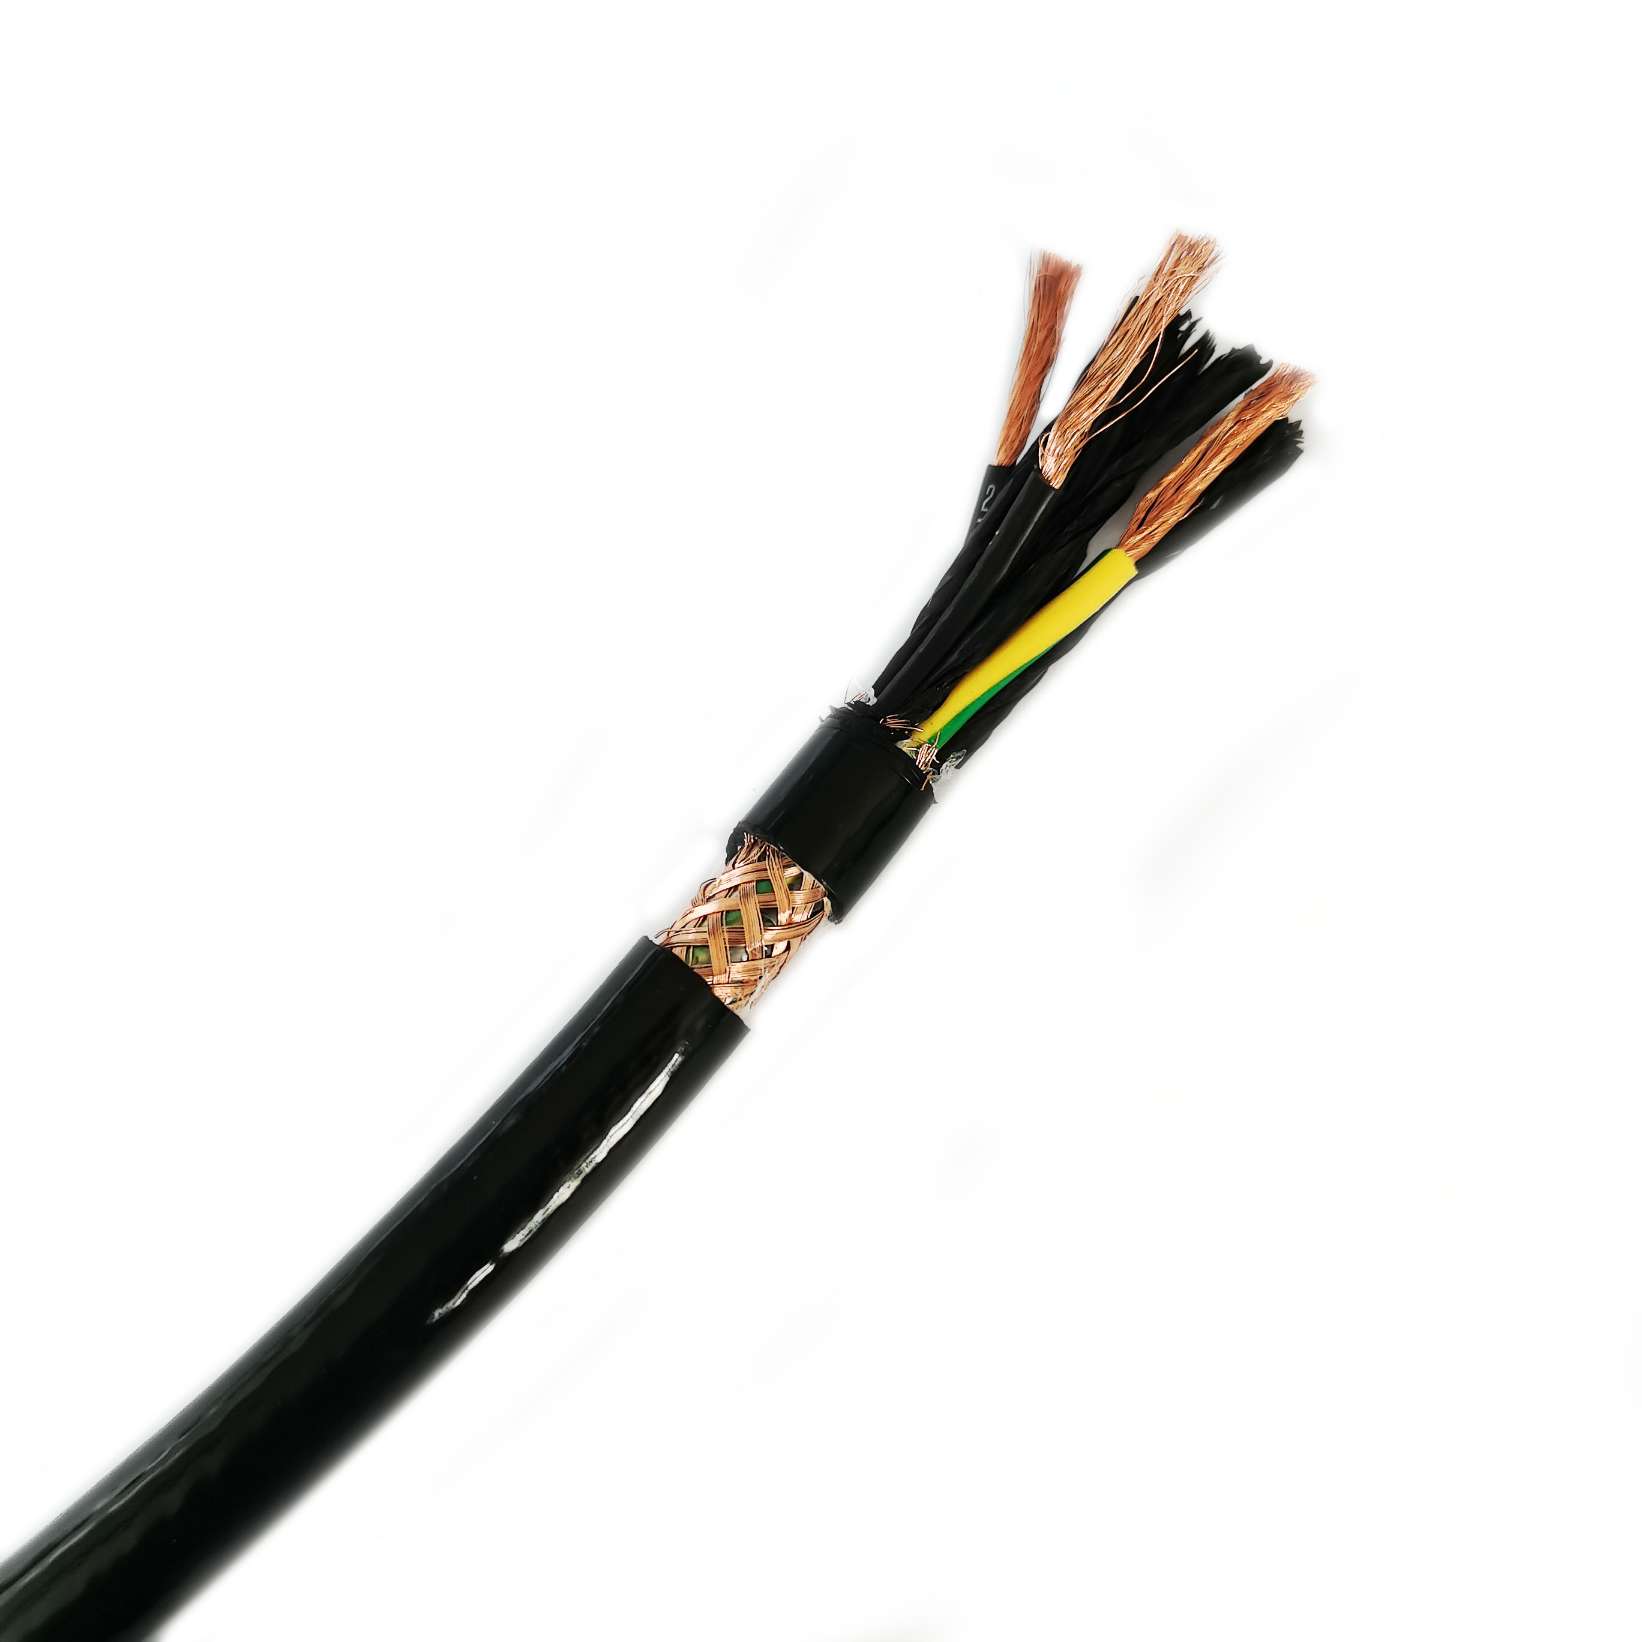 Каковы преимущества использования полиуретановых кабелей по сравнению с другими типами кабелей?